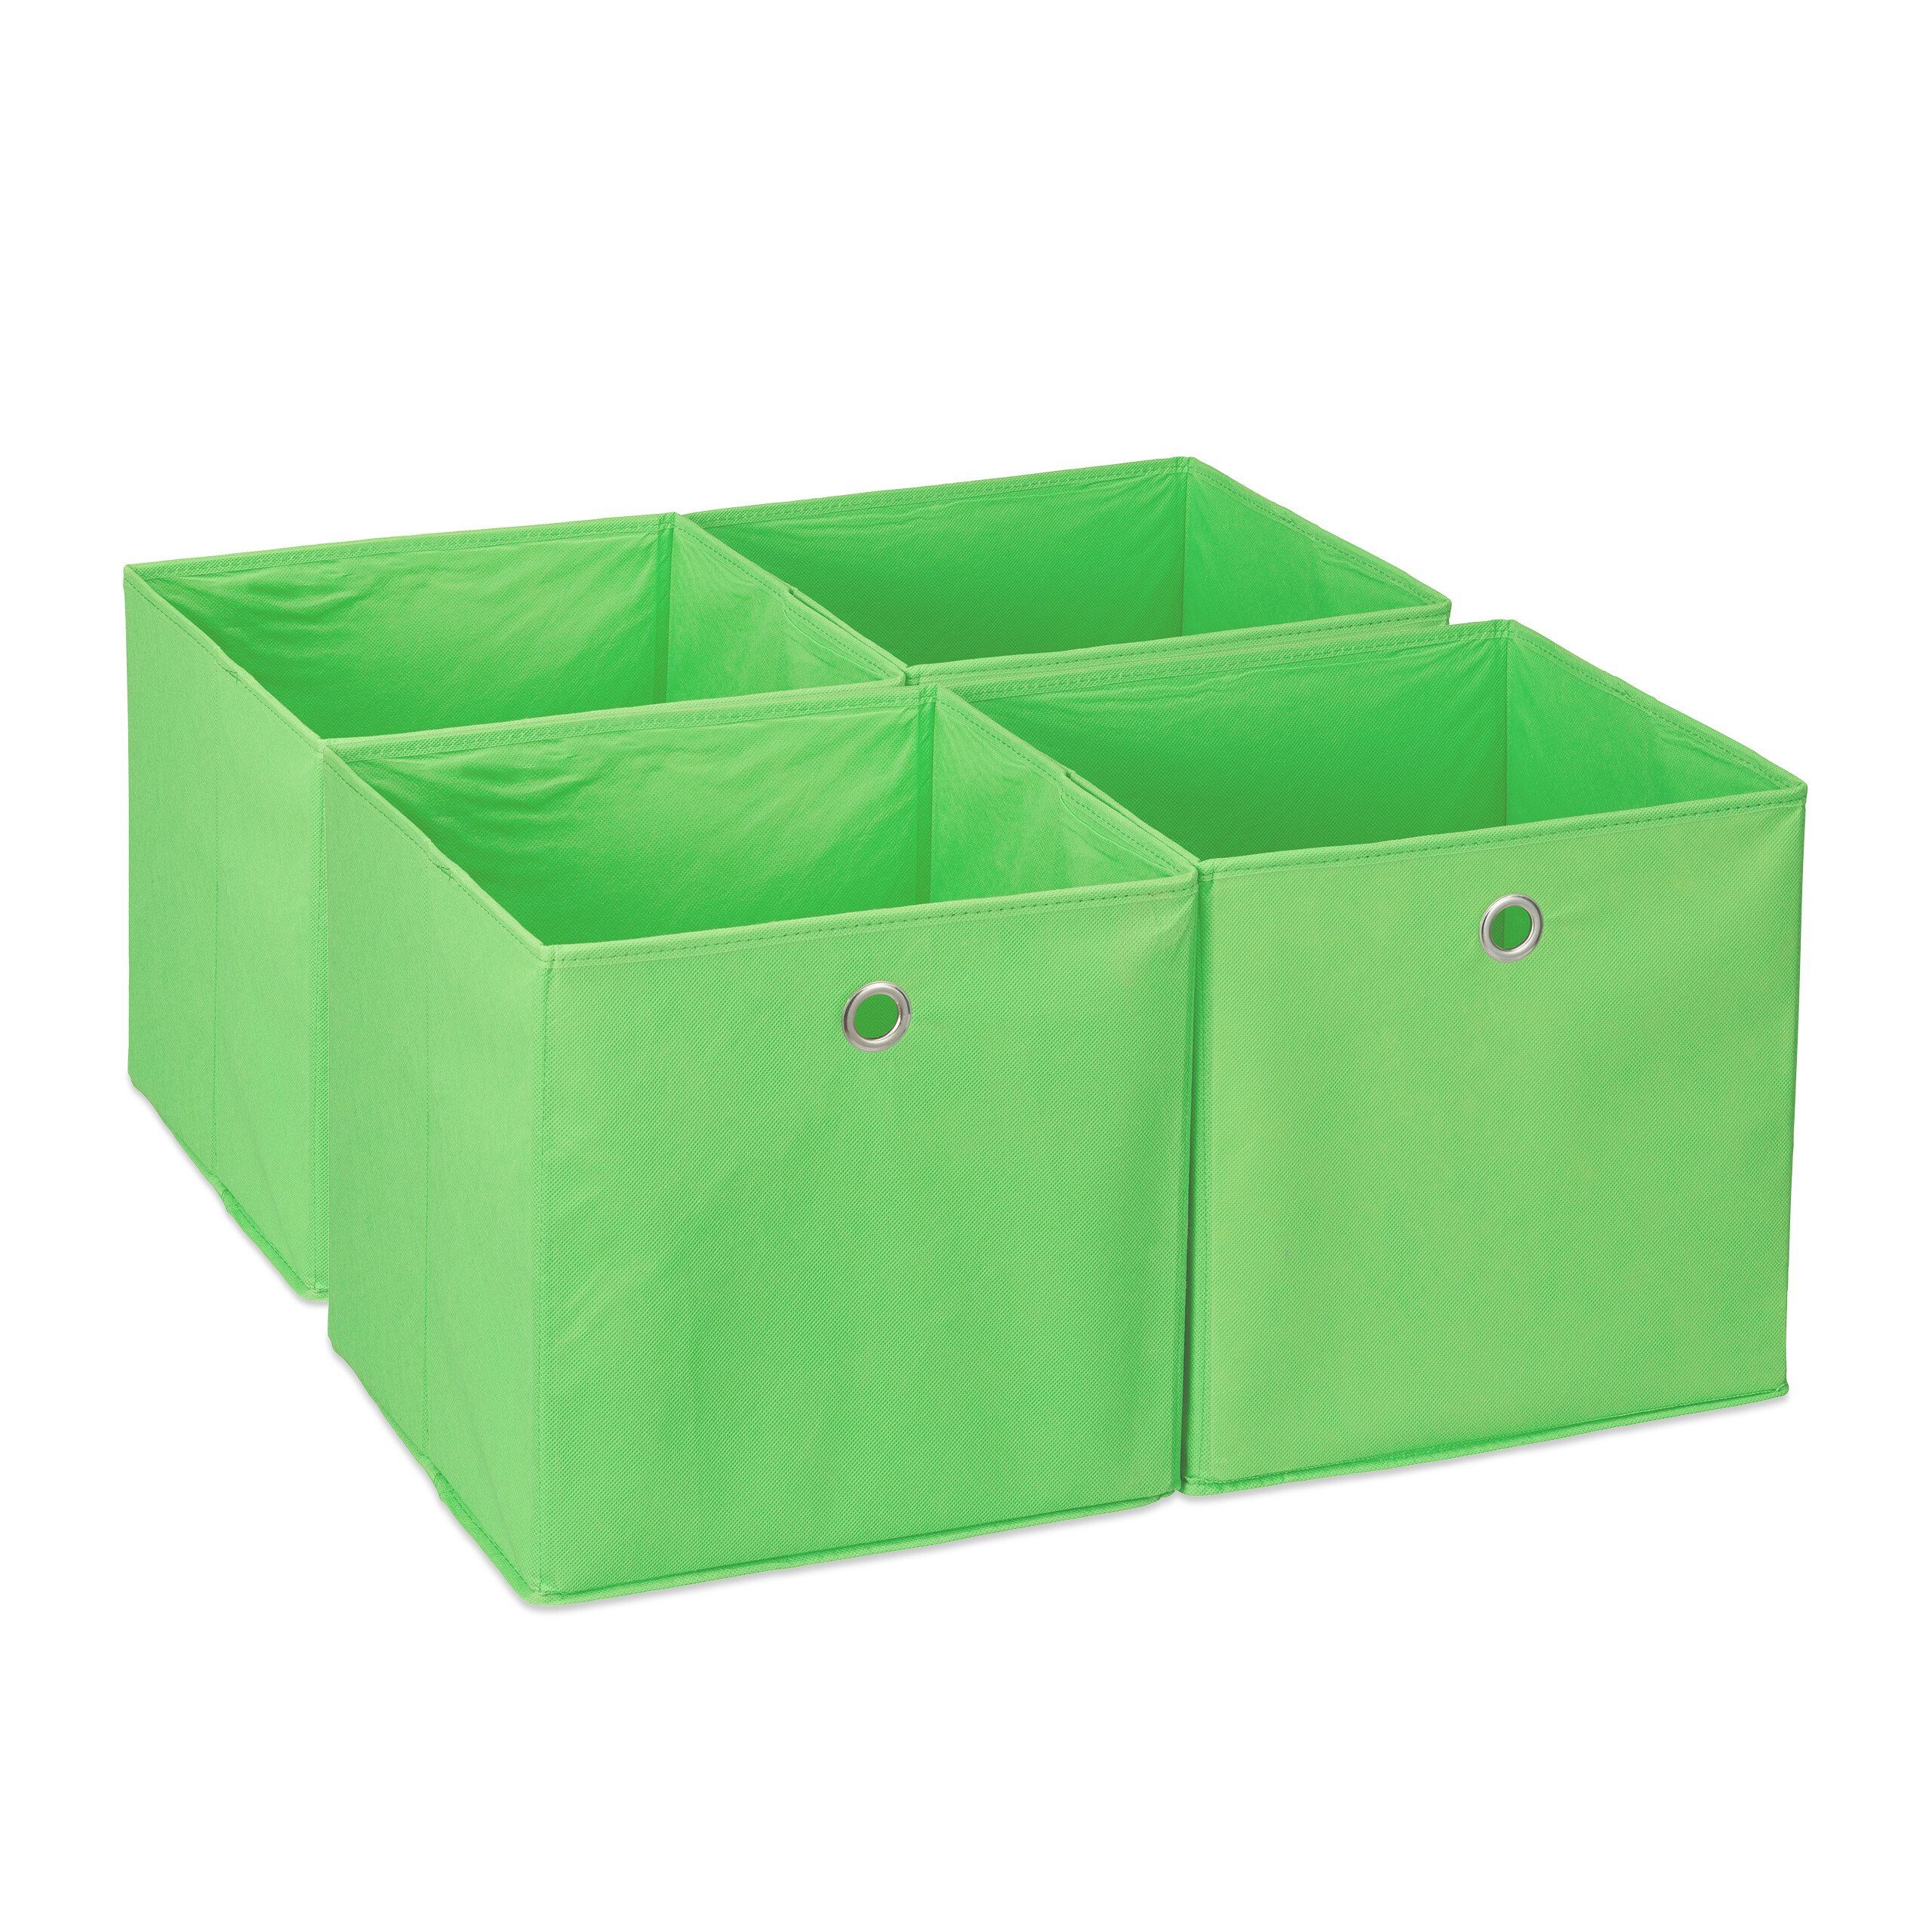 relaxdays Aufbewahrungsbox Aufbewahrungsbox im 4er Silber Grün Set, Grün